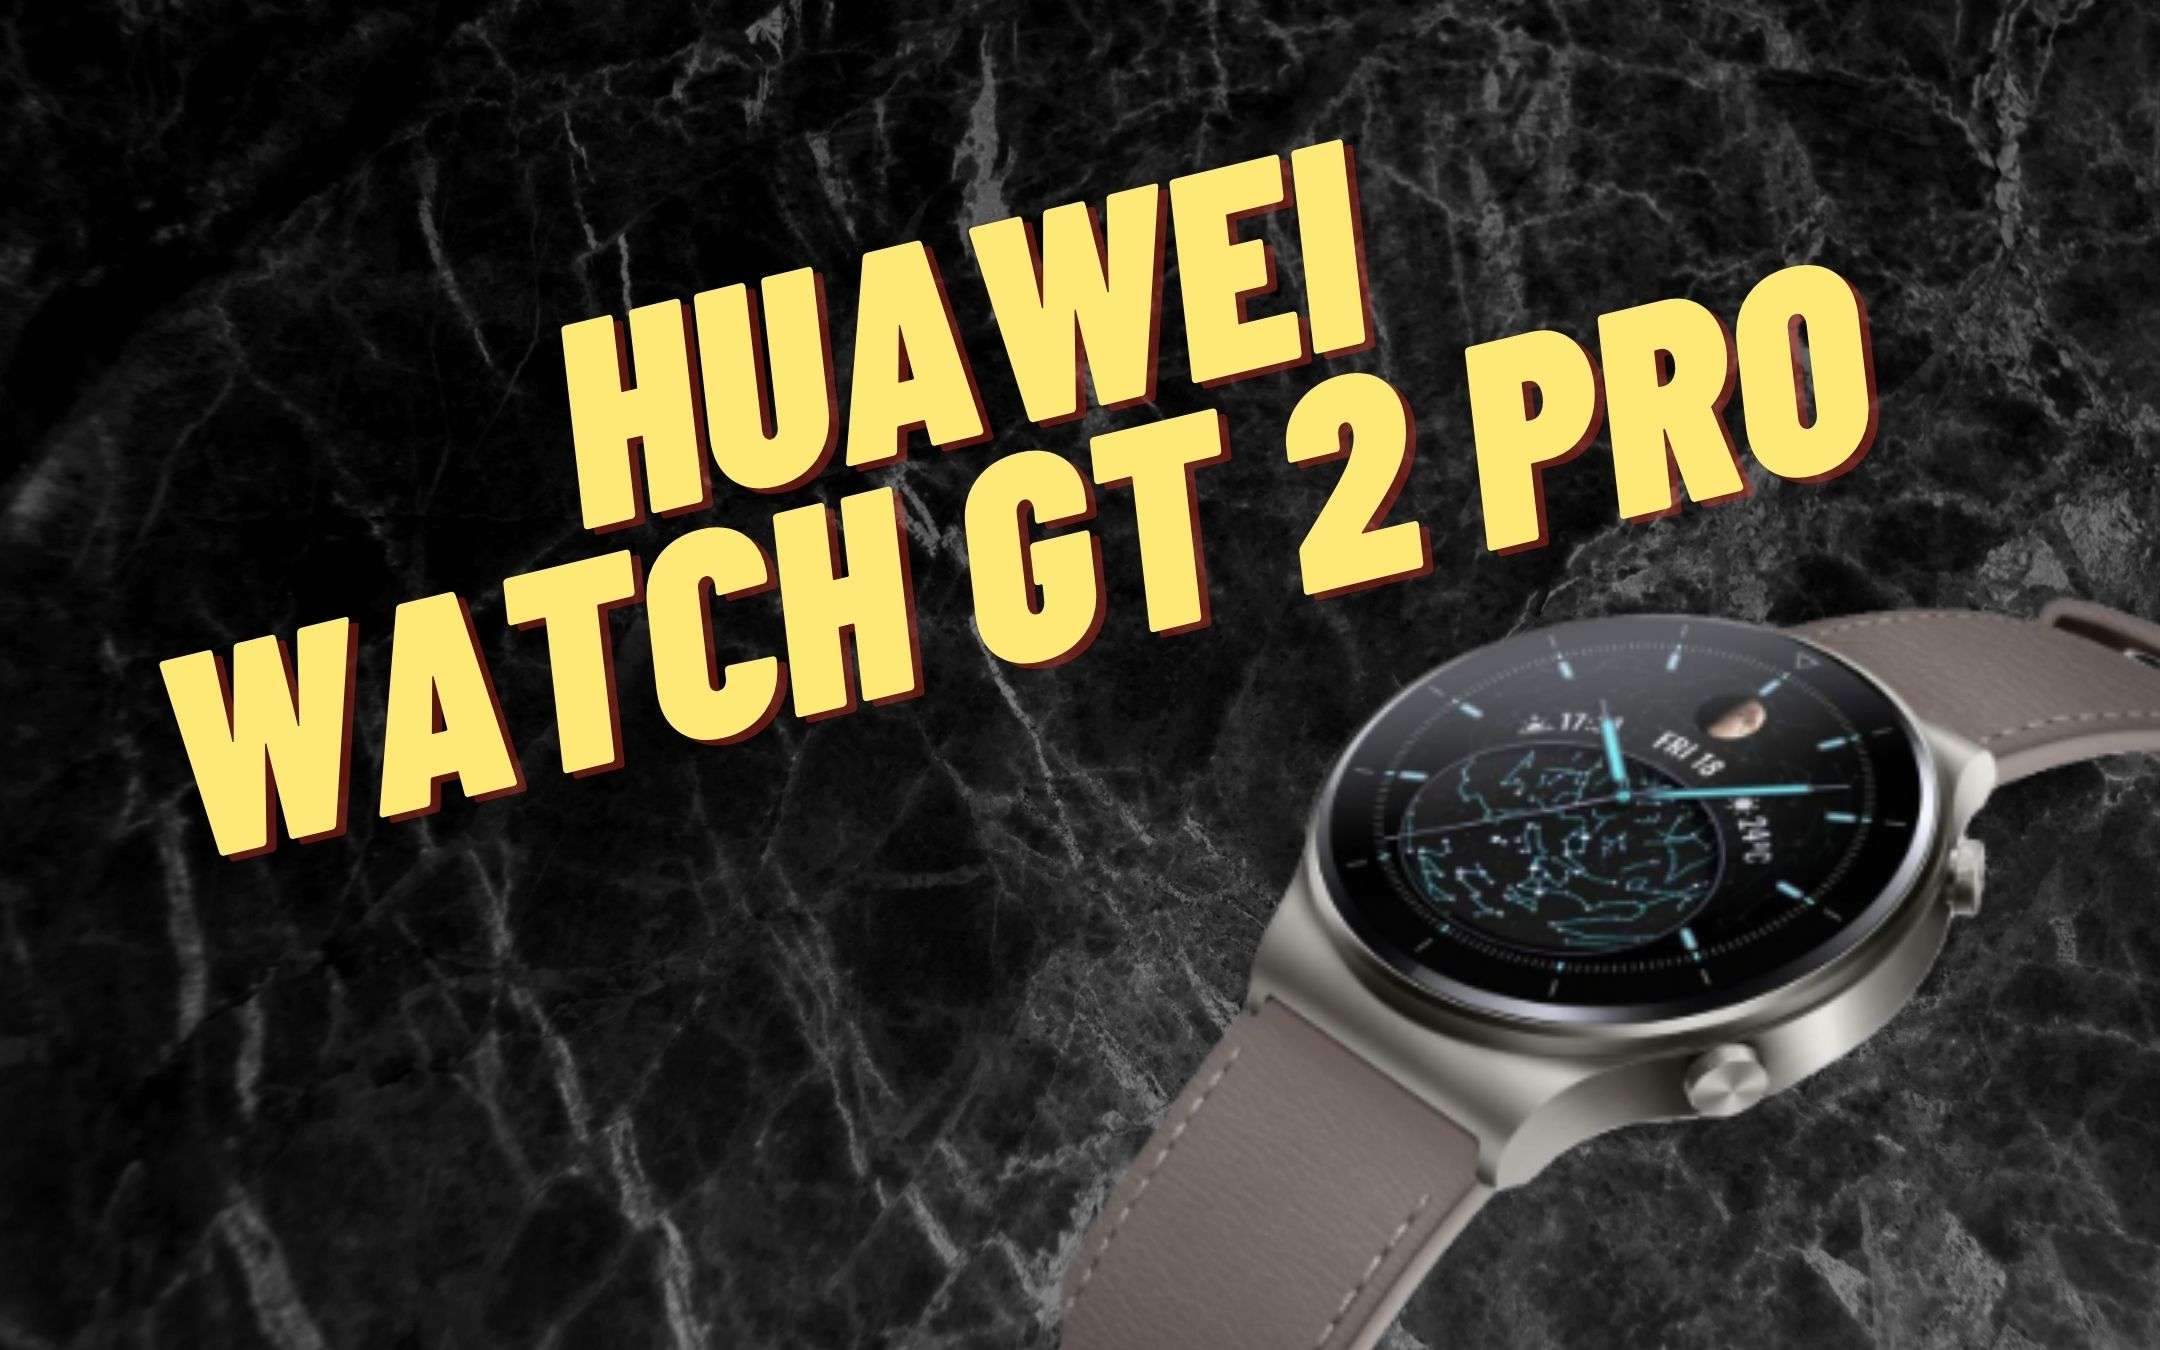 Watch GT 2 Pro: prezzo folle per il nuovo arrivato